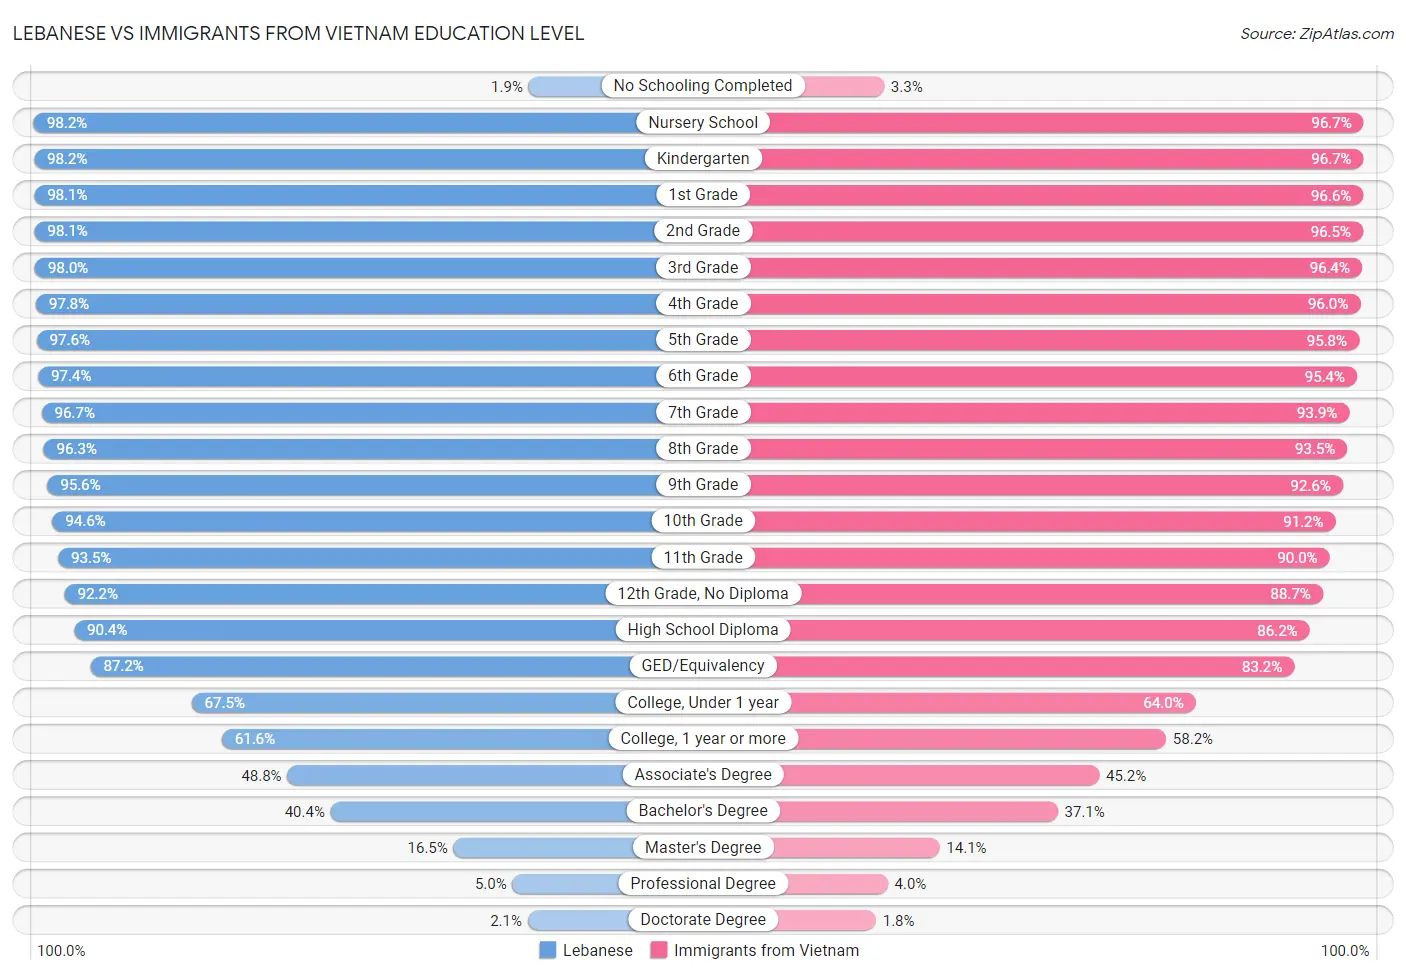 Lebanese vs Immigrants from Vietnam Education Level